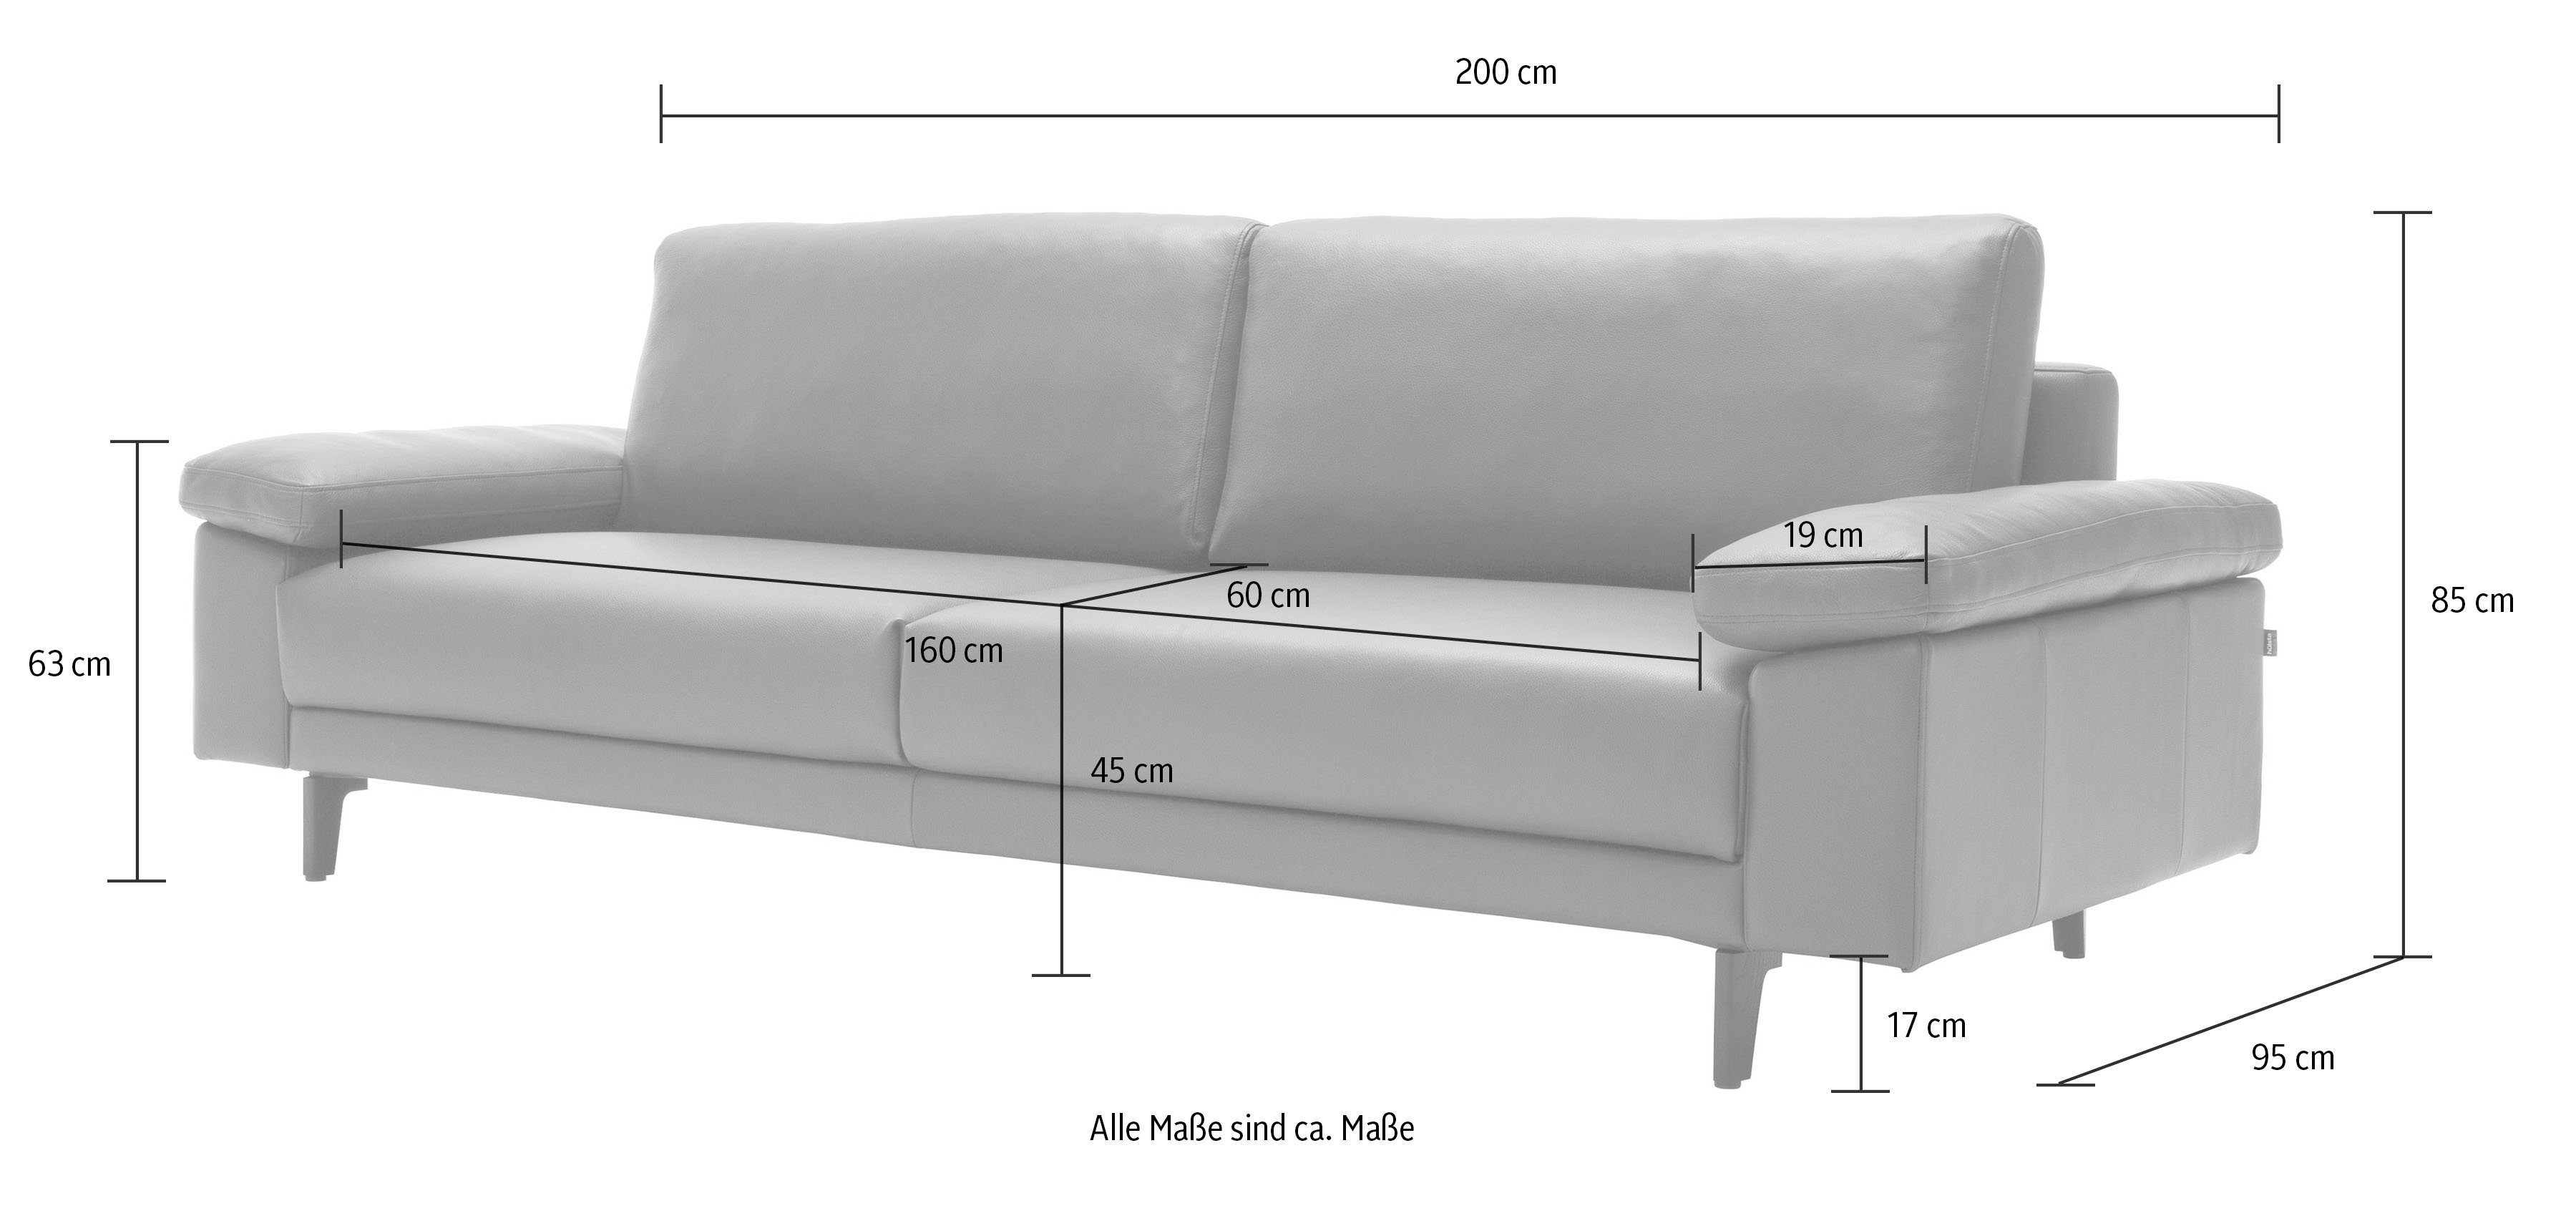 sofa 2,5-Sitzer hs.450 hülsta